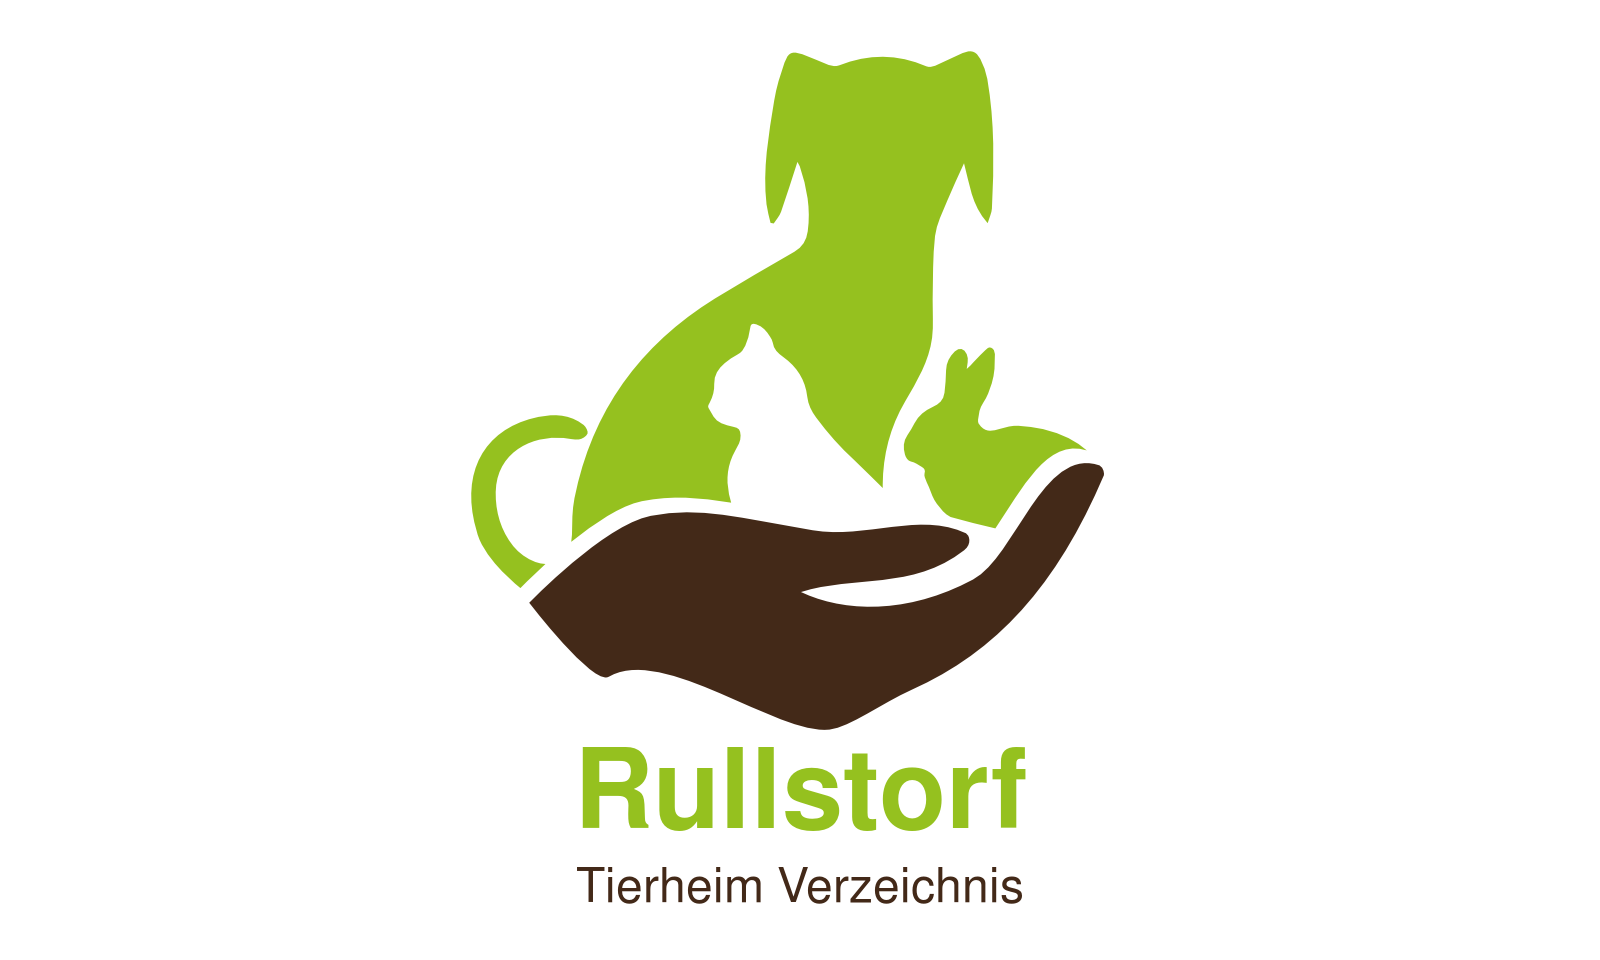 Tierheim Rullstorf